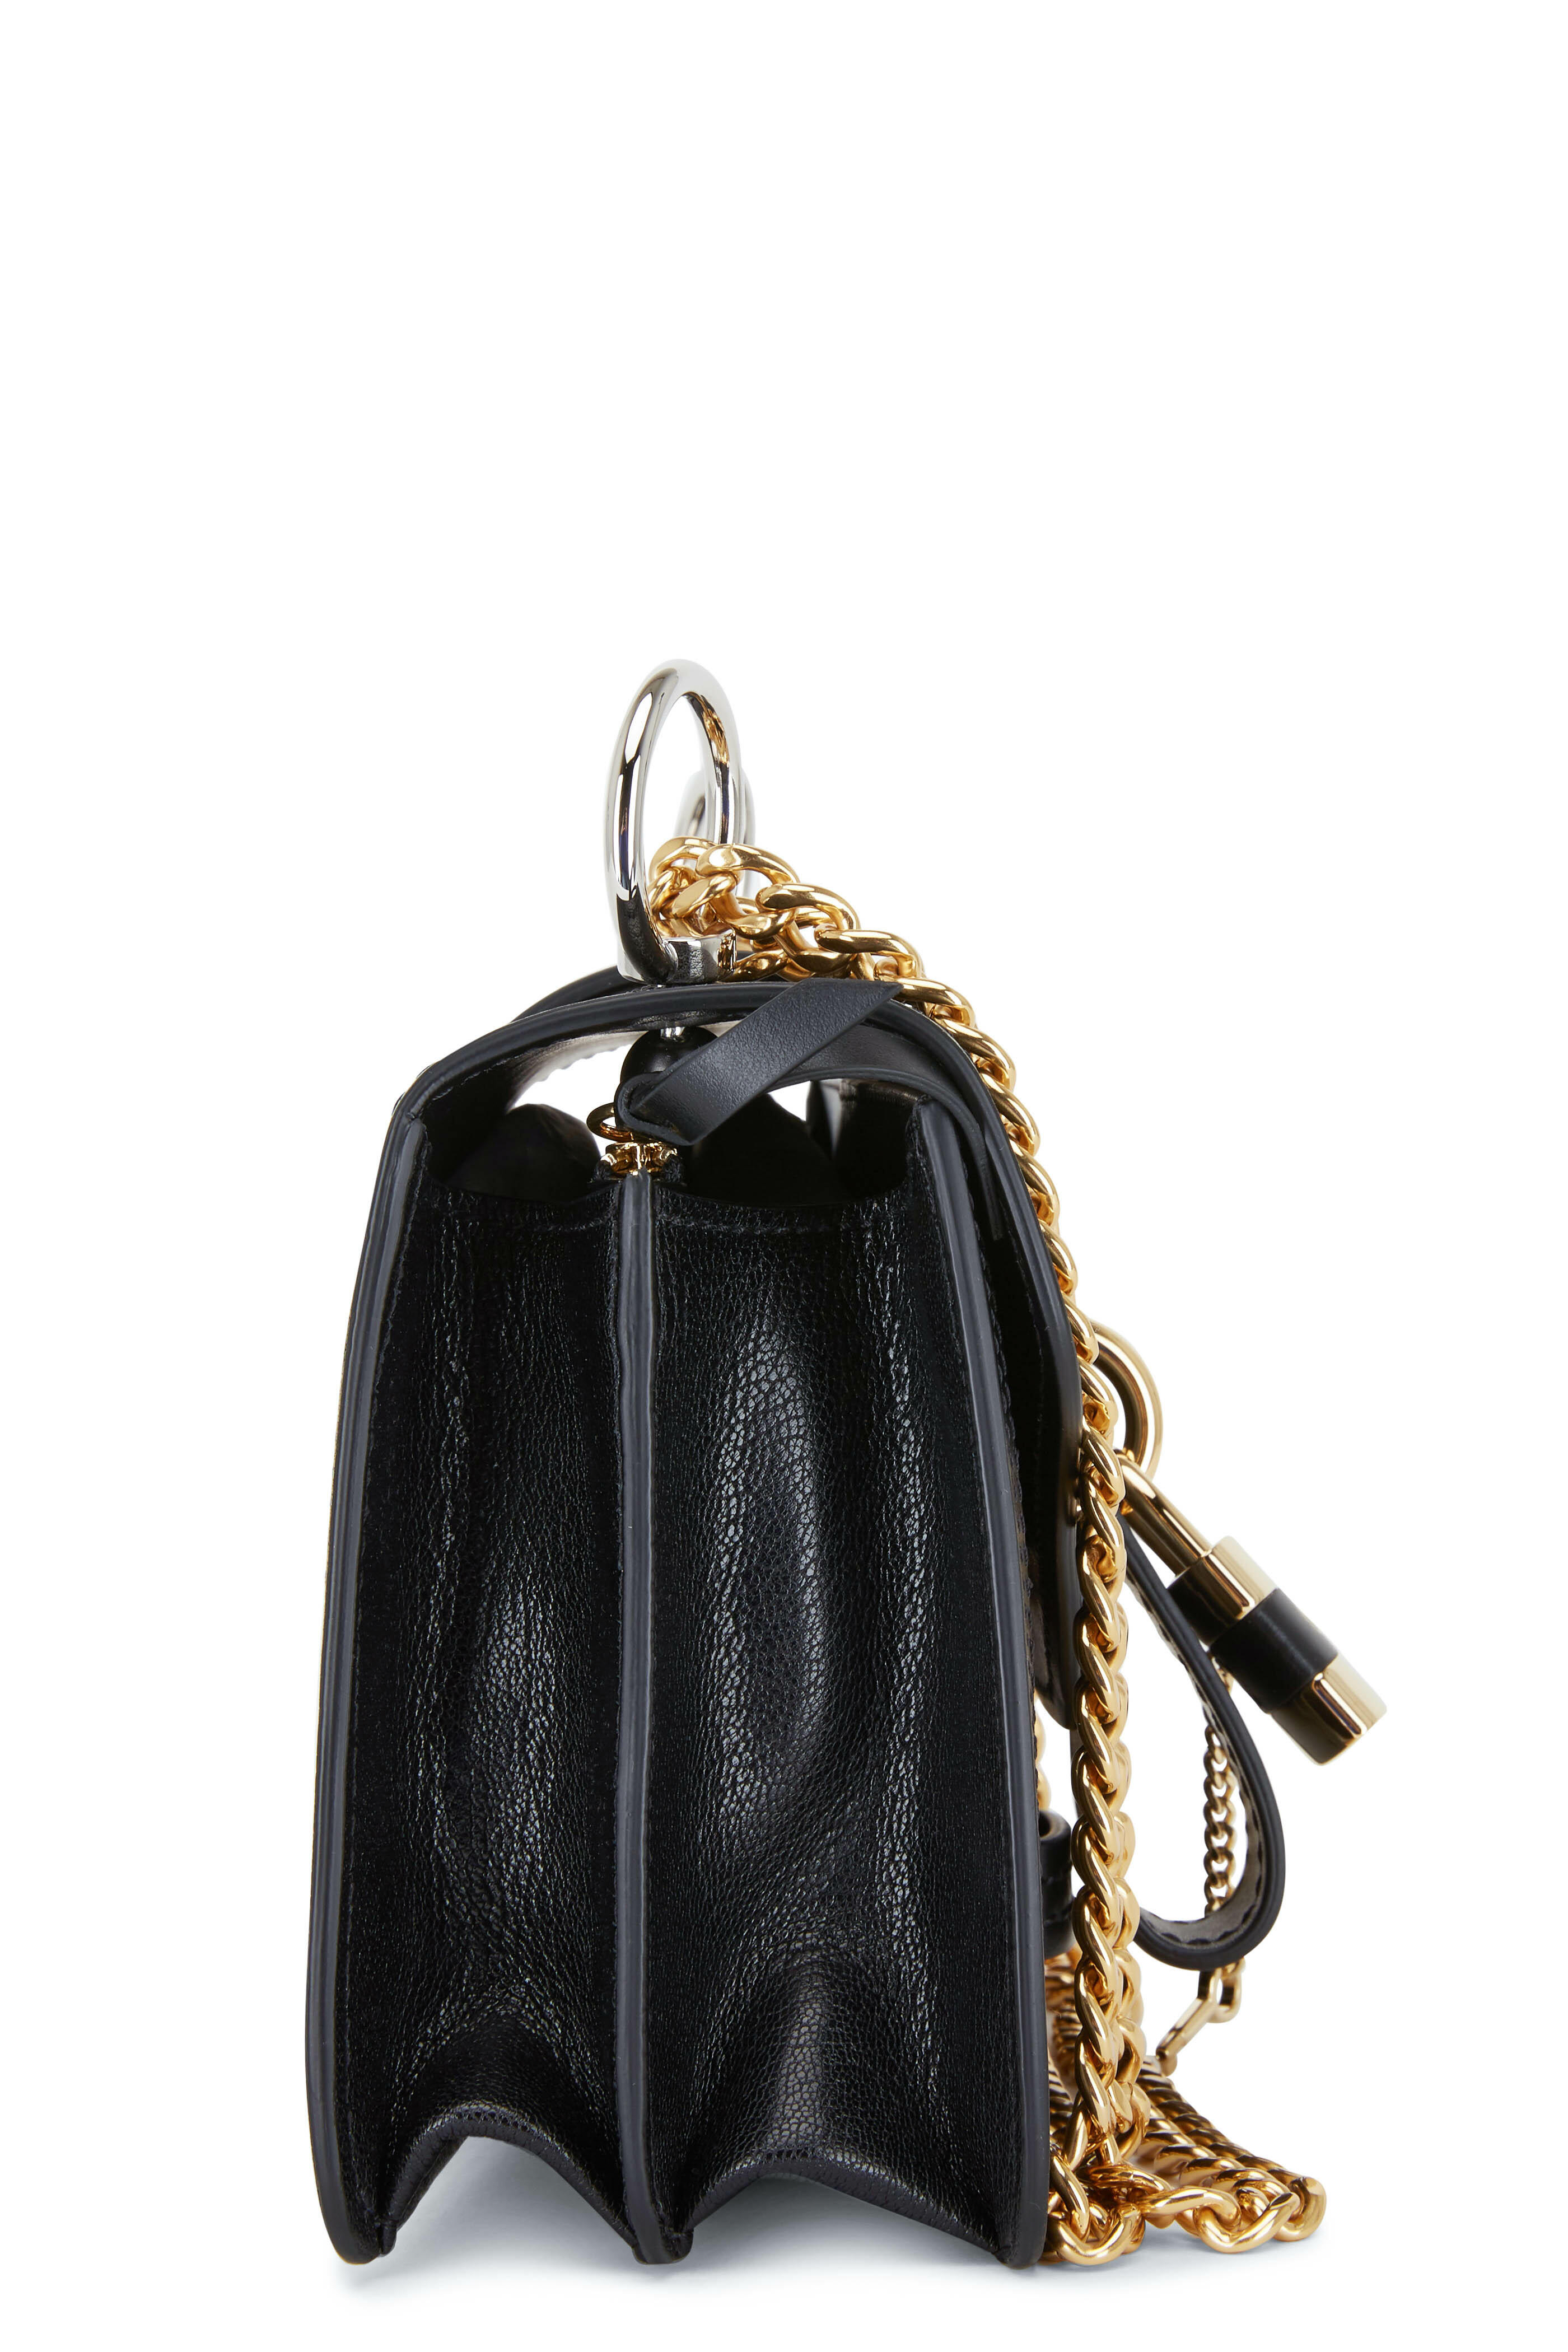 Gucci Gold Textured Leather Padlock Shoulder Bag